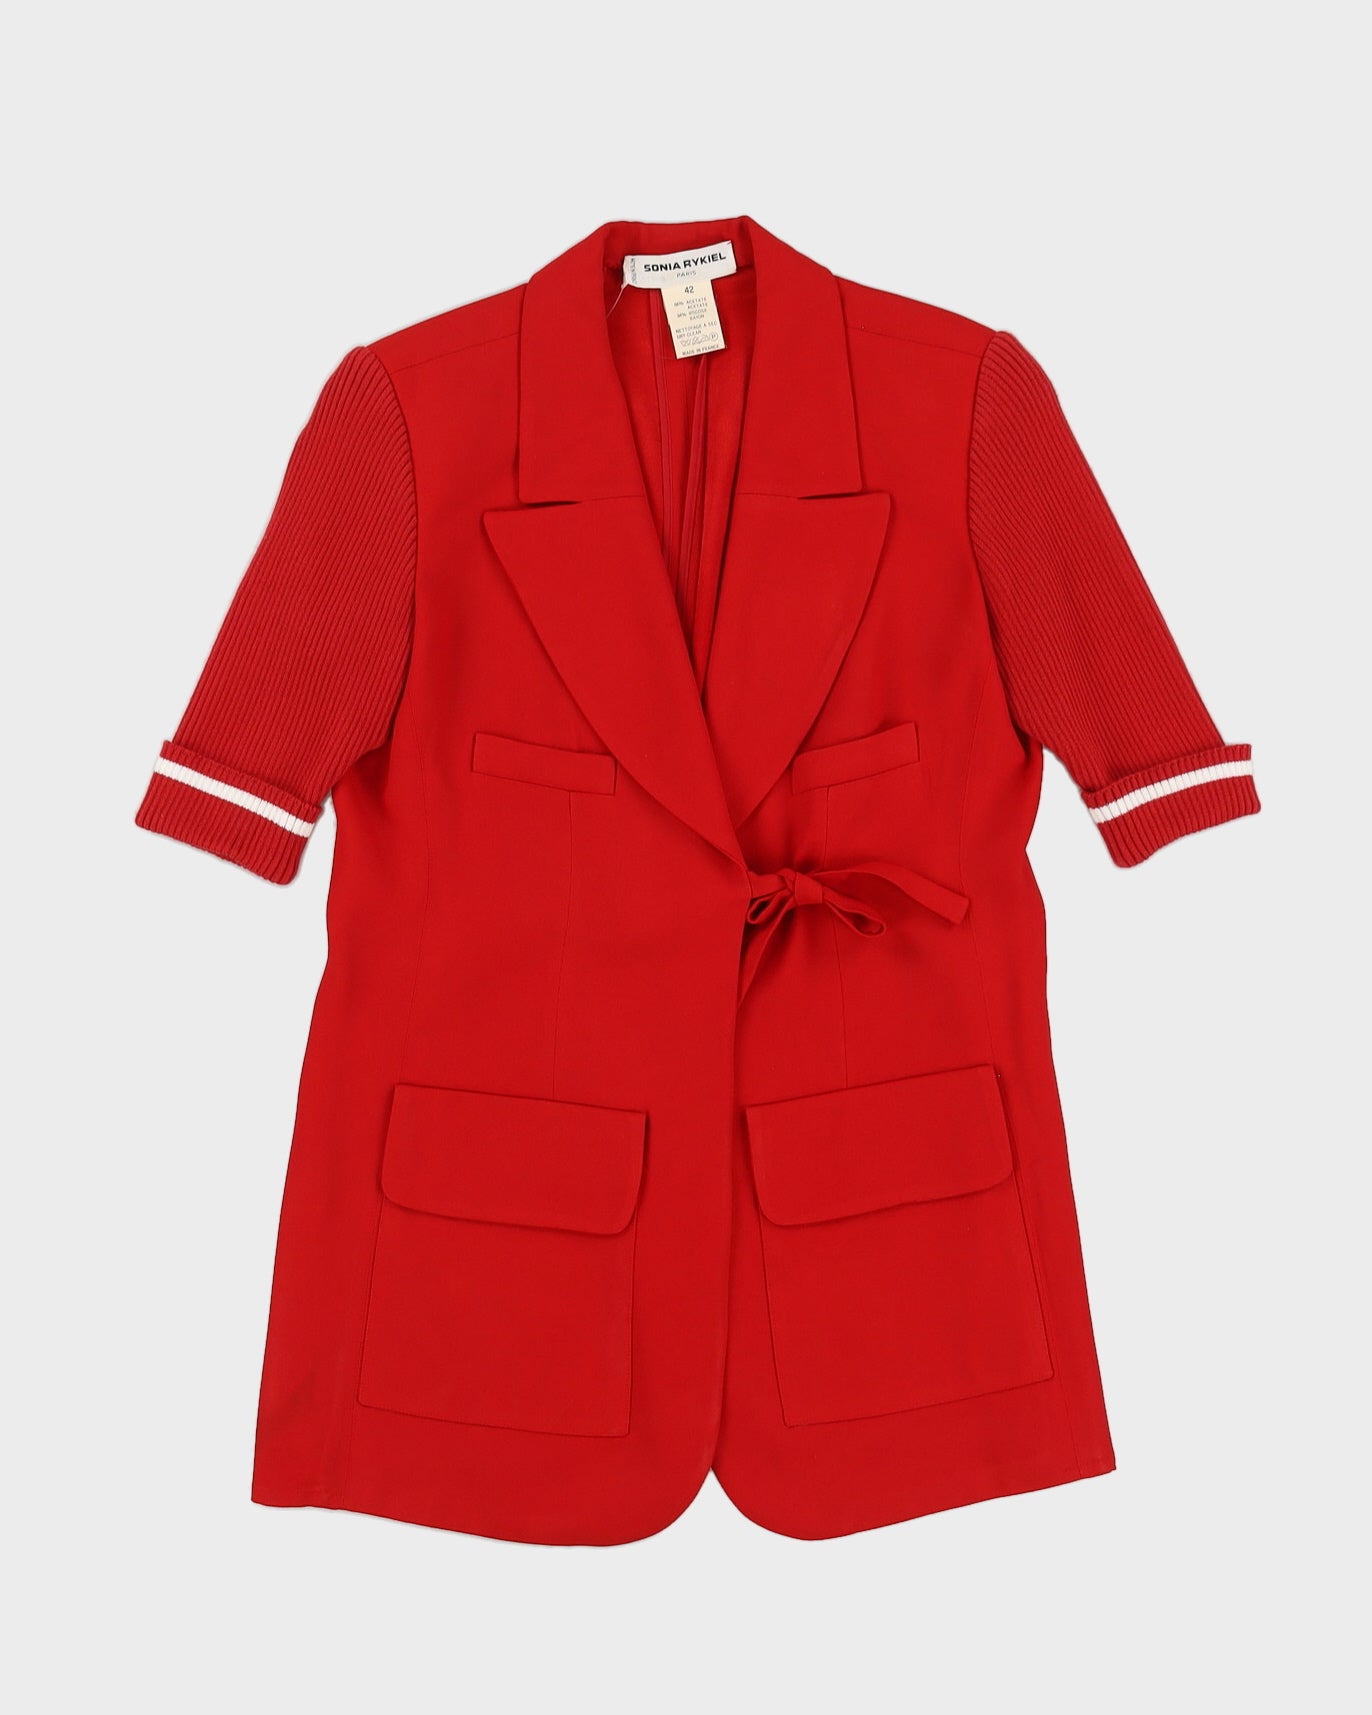 Sonia Rykiel Red Blazer Jacket - M – Rokit